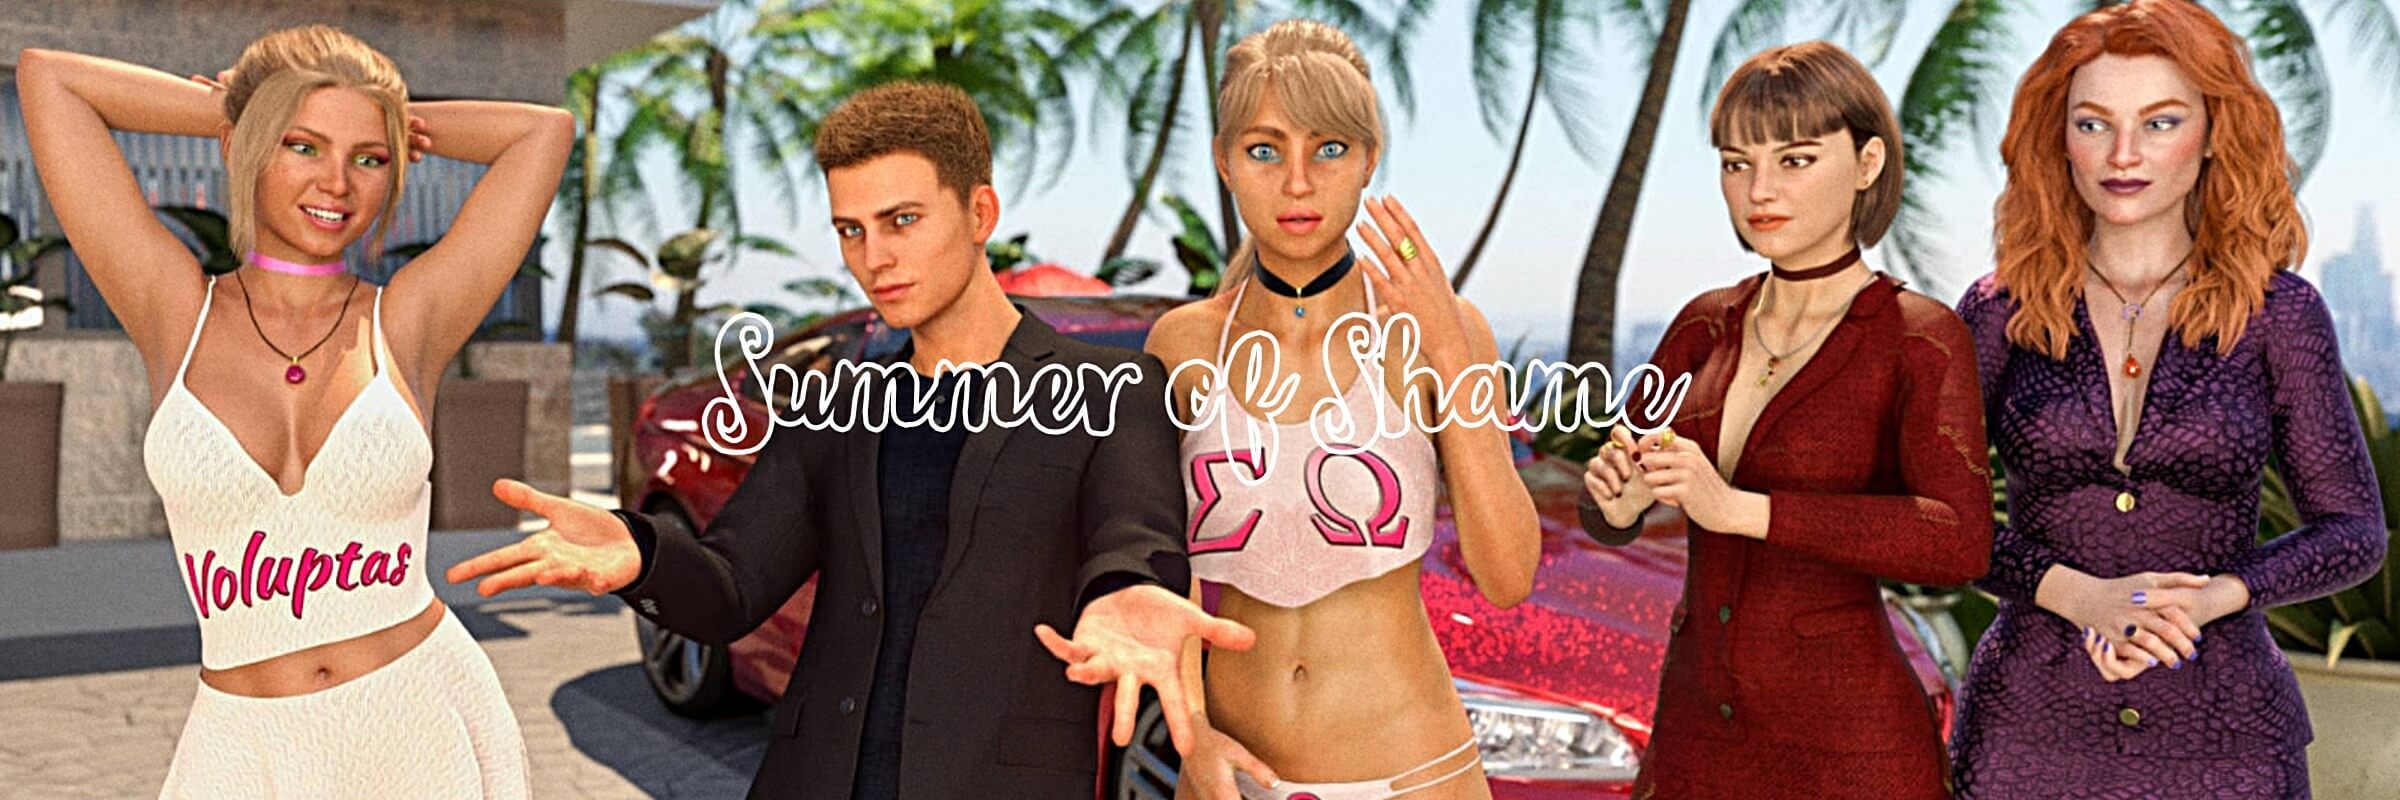 Summer of Shame [v0.29]